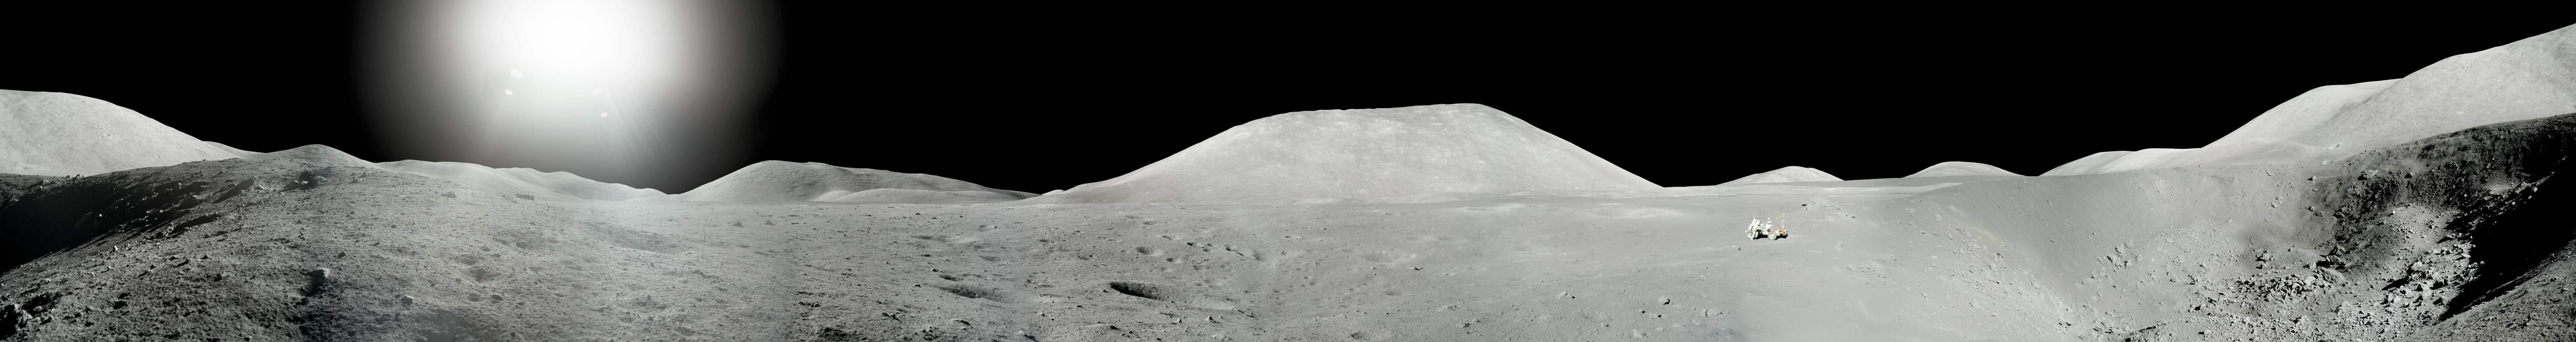 Жнец дрейфующей луны 80 вк. Аполлон 17 панорама. Панорамные снимки Луны Аполлон. Пик Агнесс гора на Луне. Издание которое опубликовали панорамные изображения Луны.